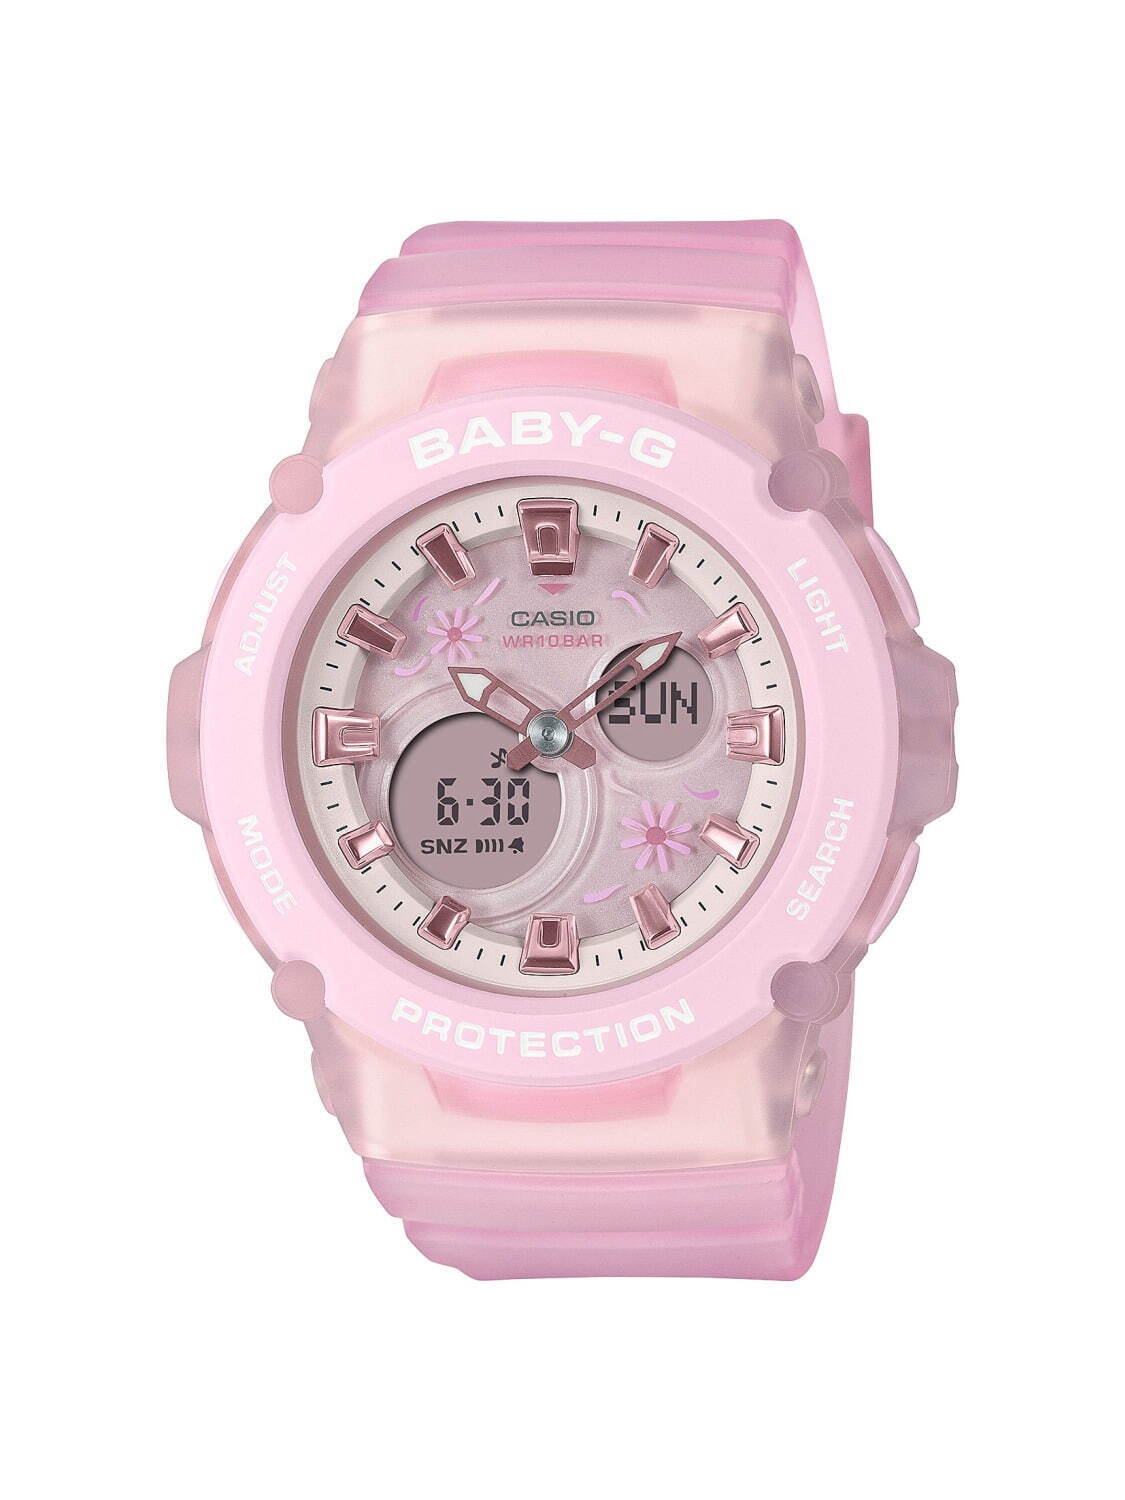 BABY-G「コスモスピンク」の腕時計、“ビーチ”や“フラワー”モチーフの ...